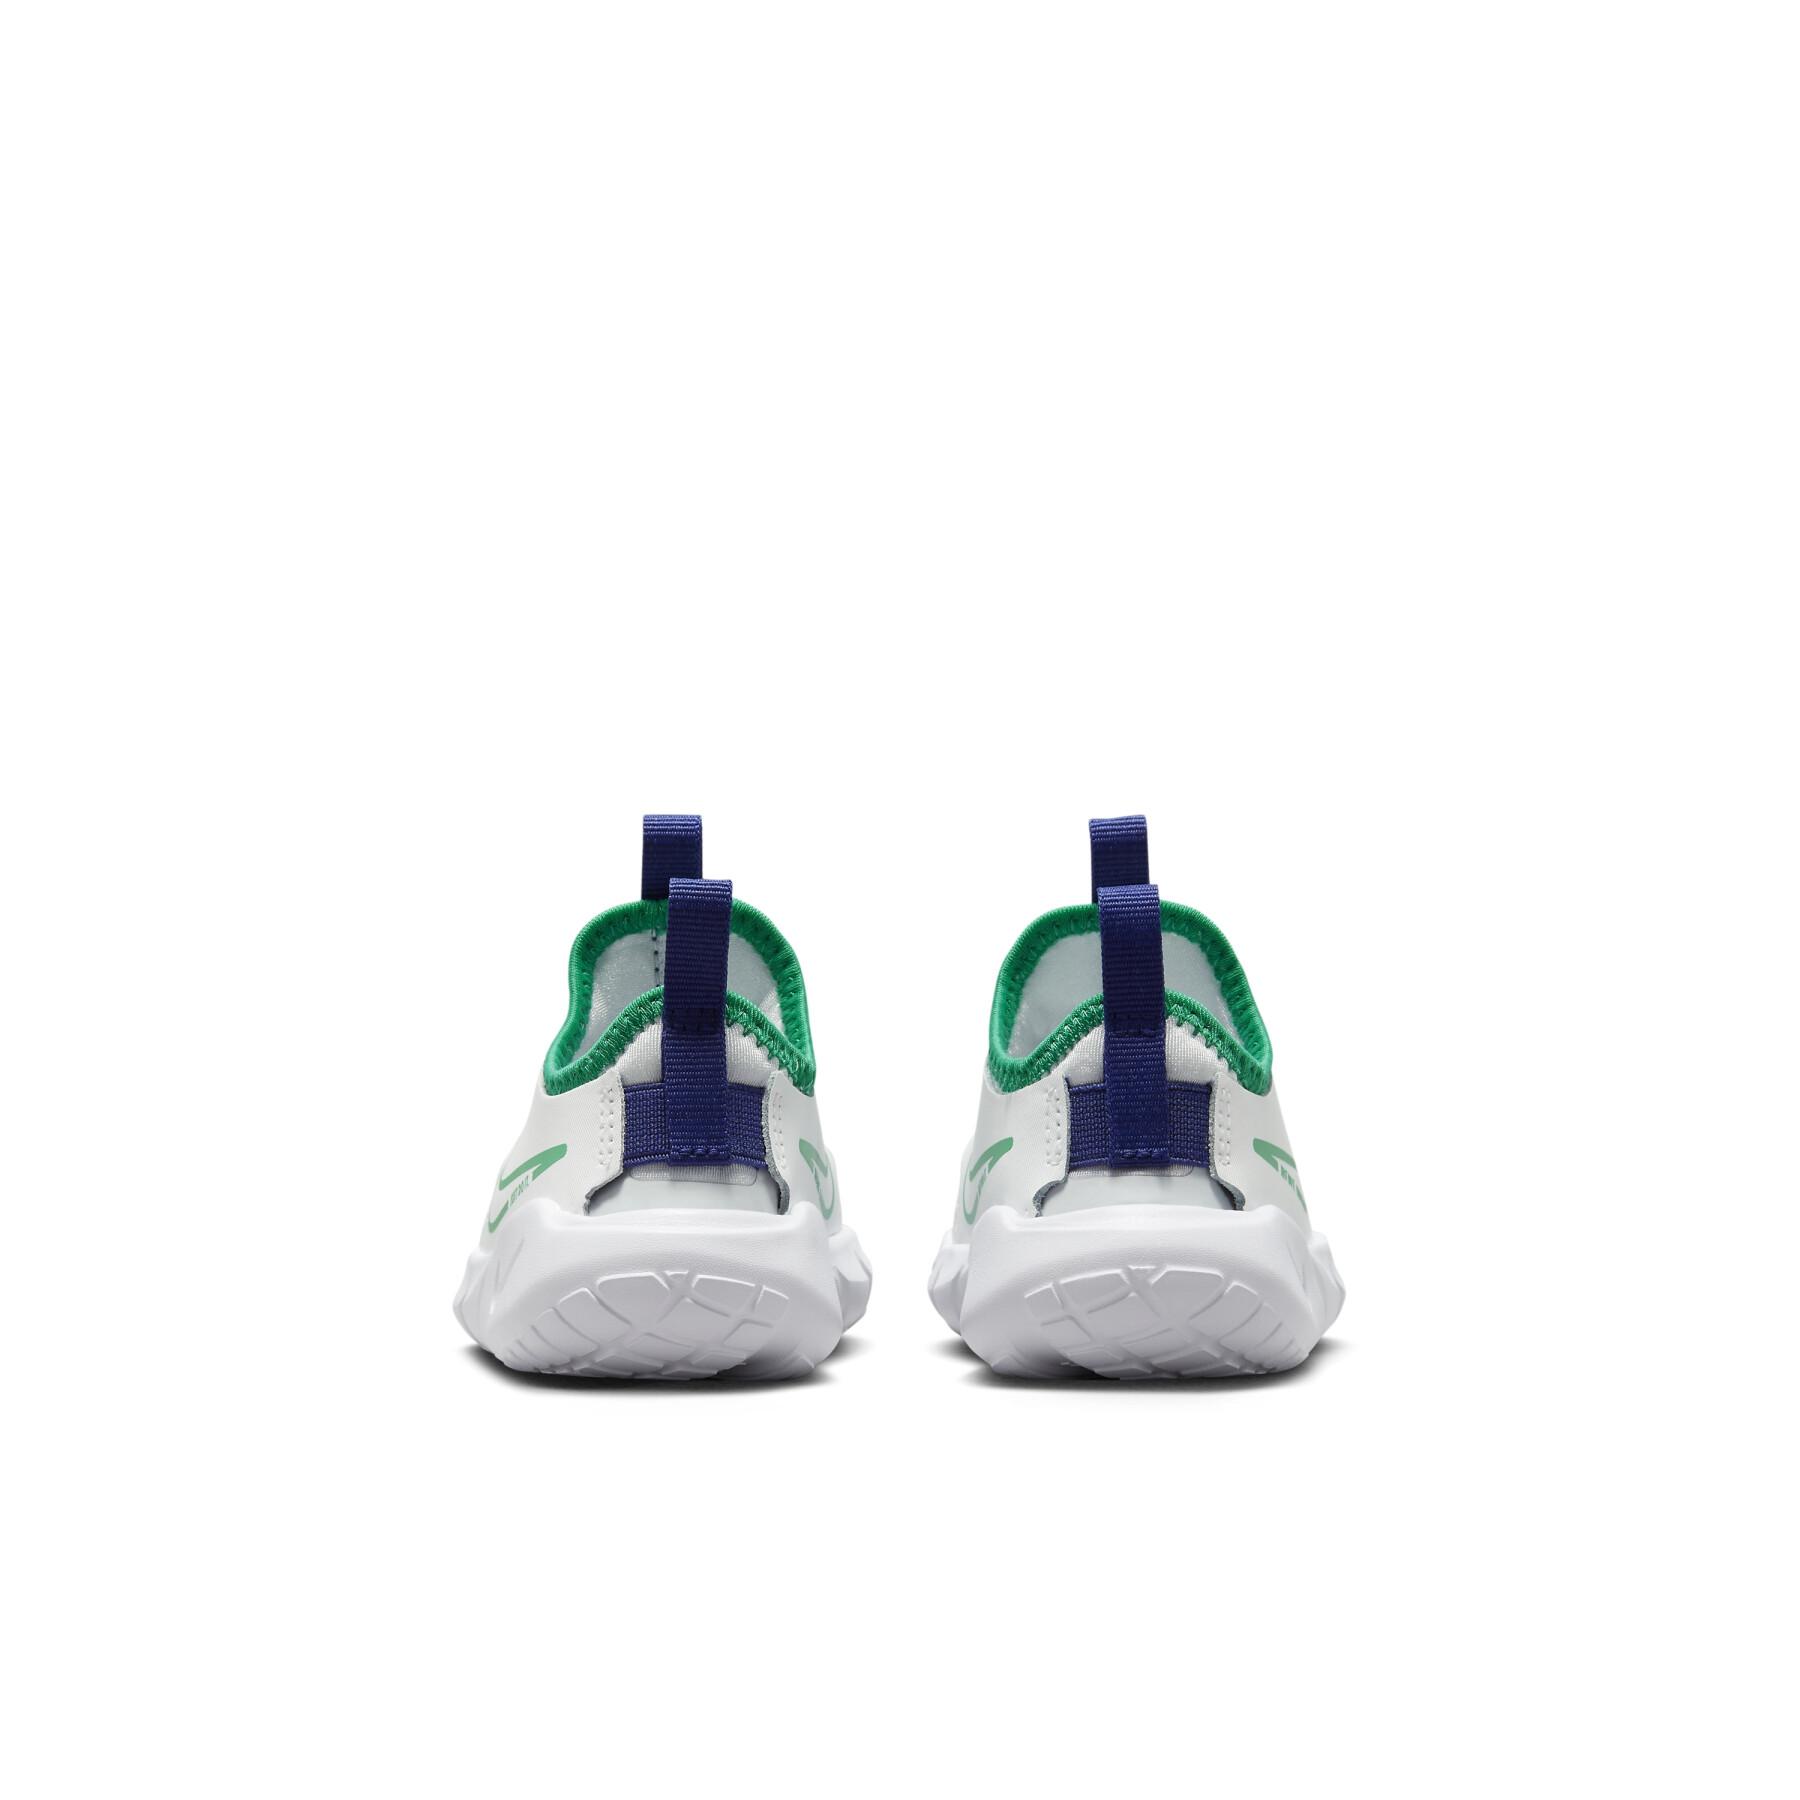 Scarpe da ginnastica per bambini Nike Flex Runner 2